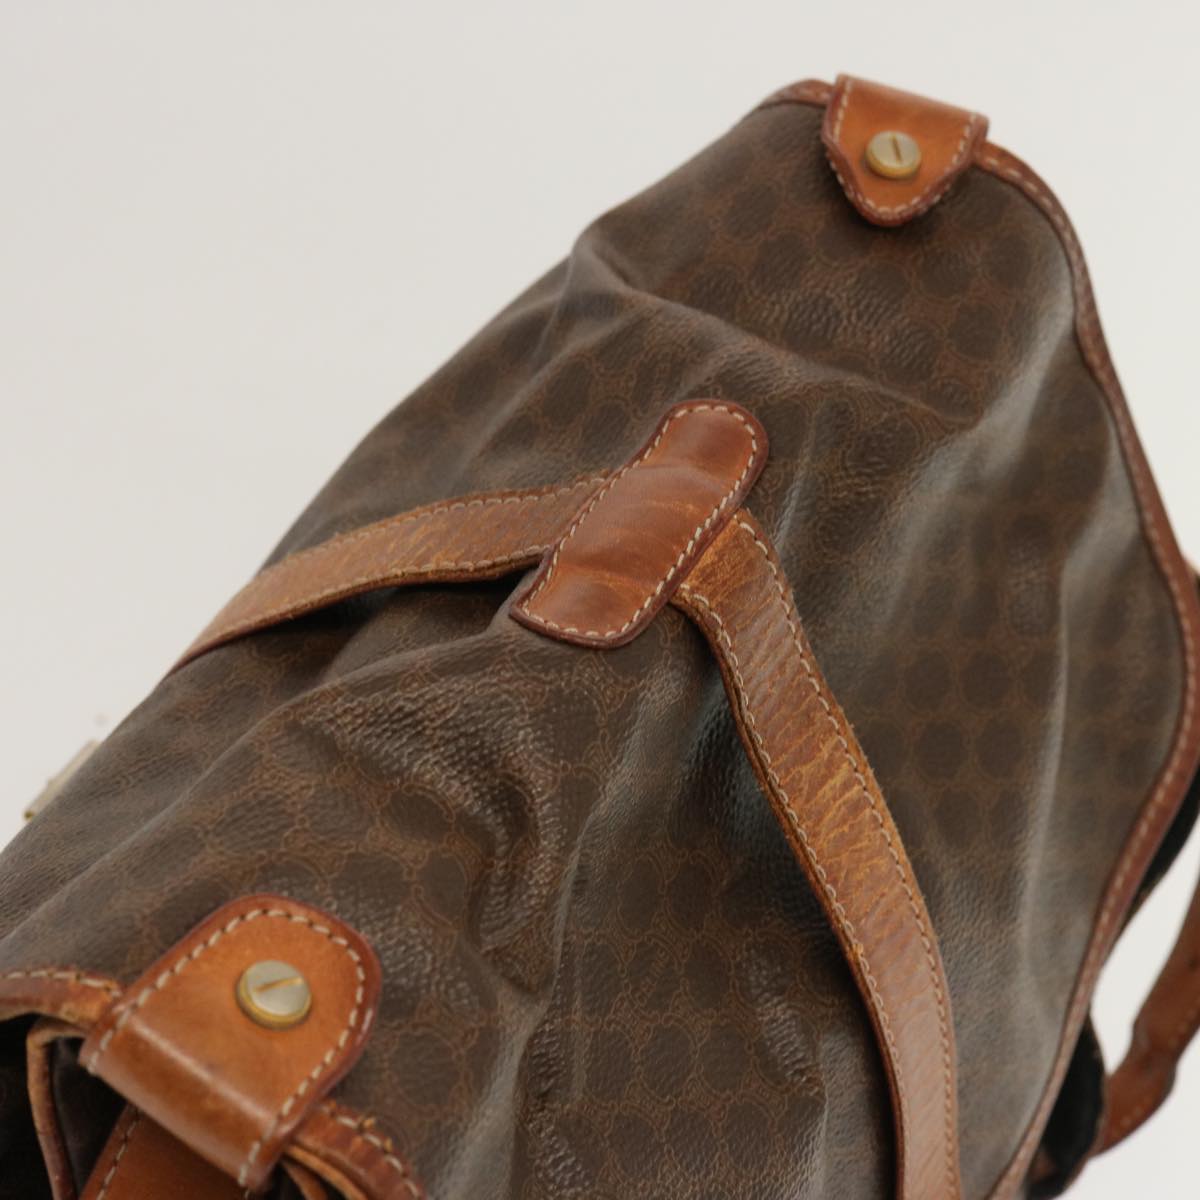 CELINE Macadam Canvas Shoulder Bag PVC Brown Auth 70829